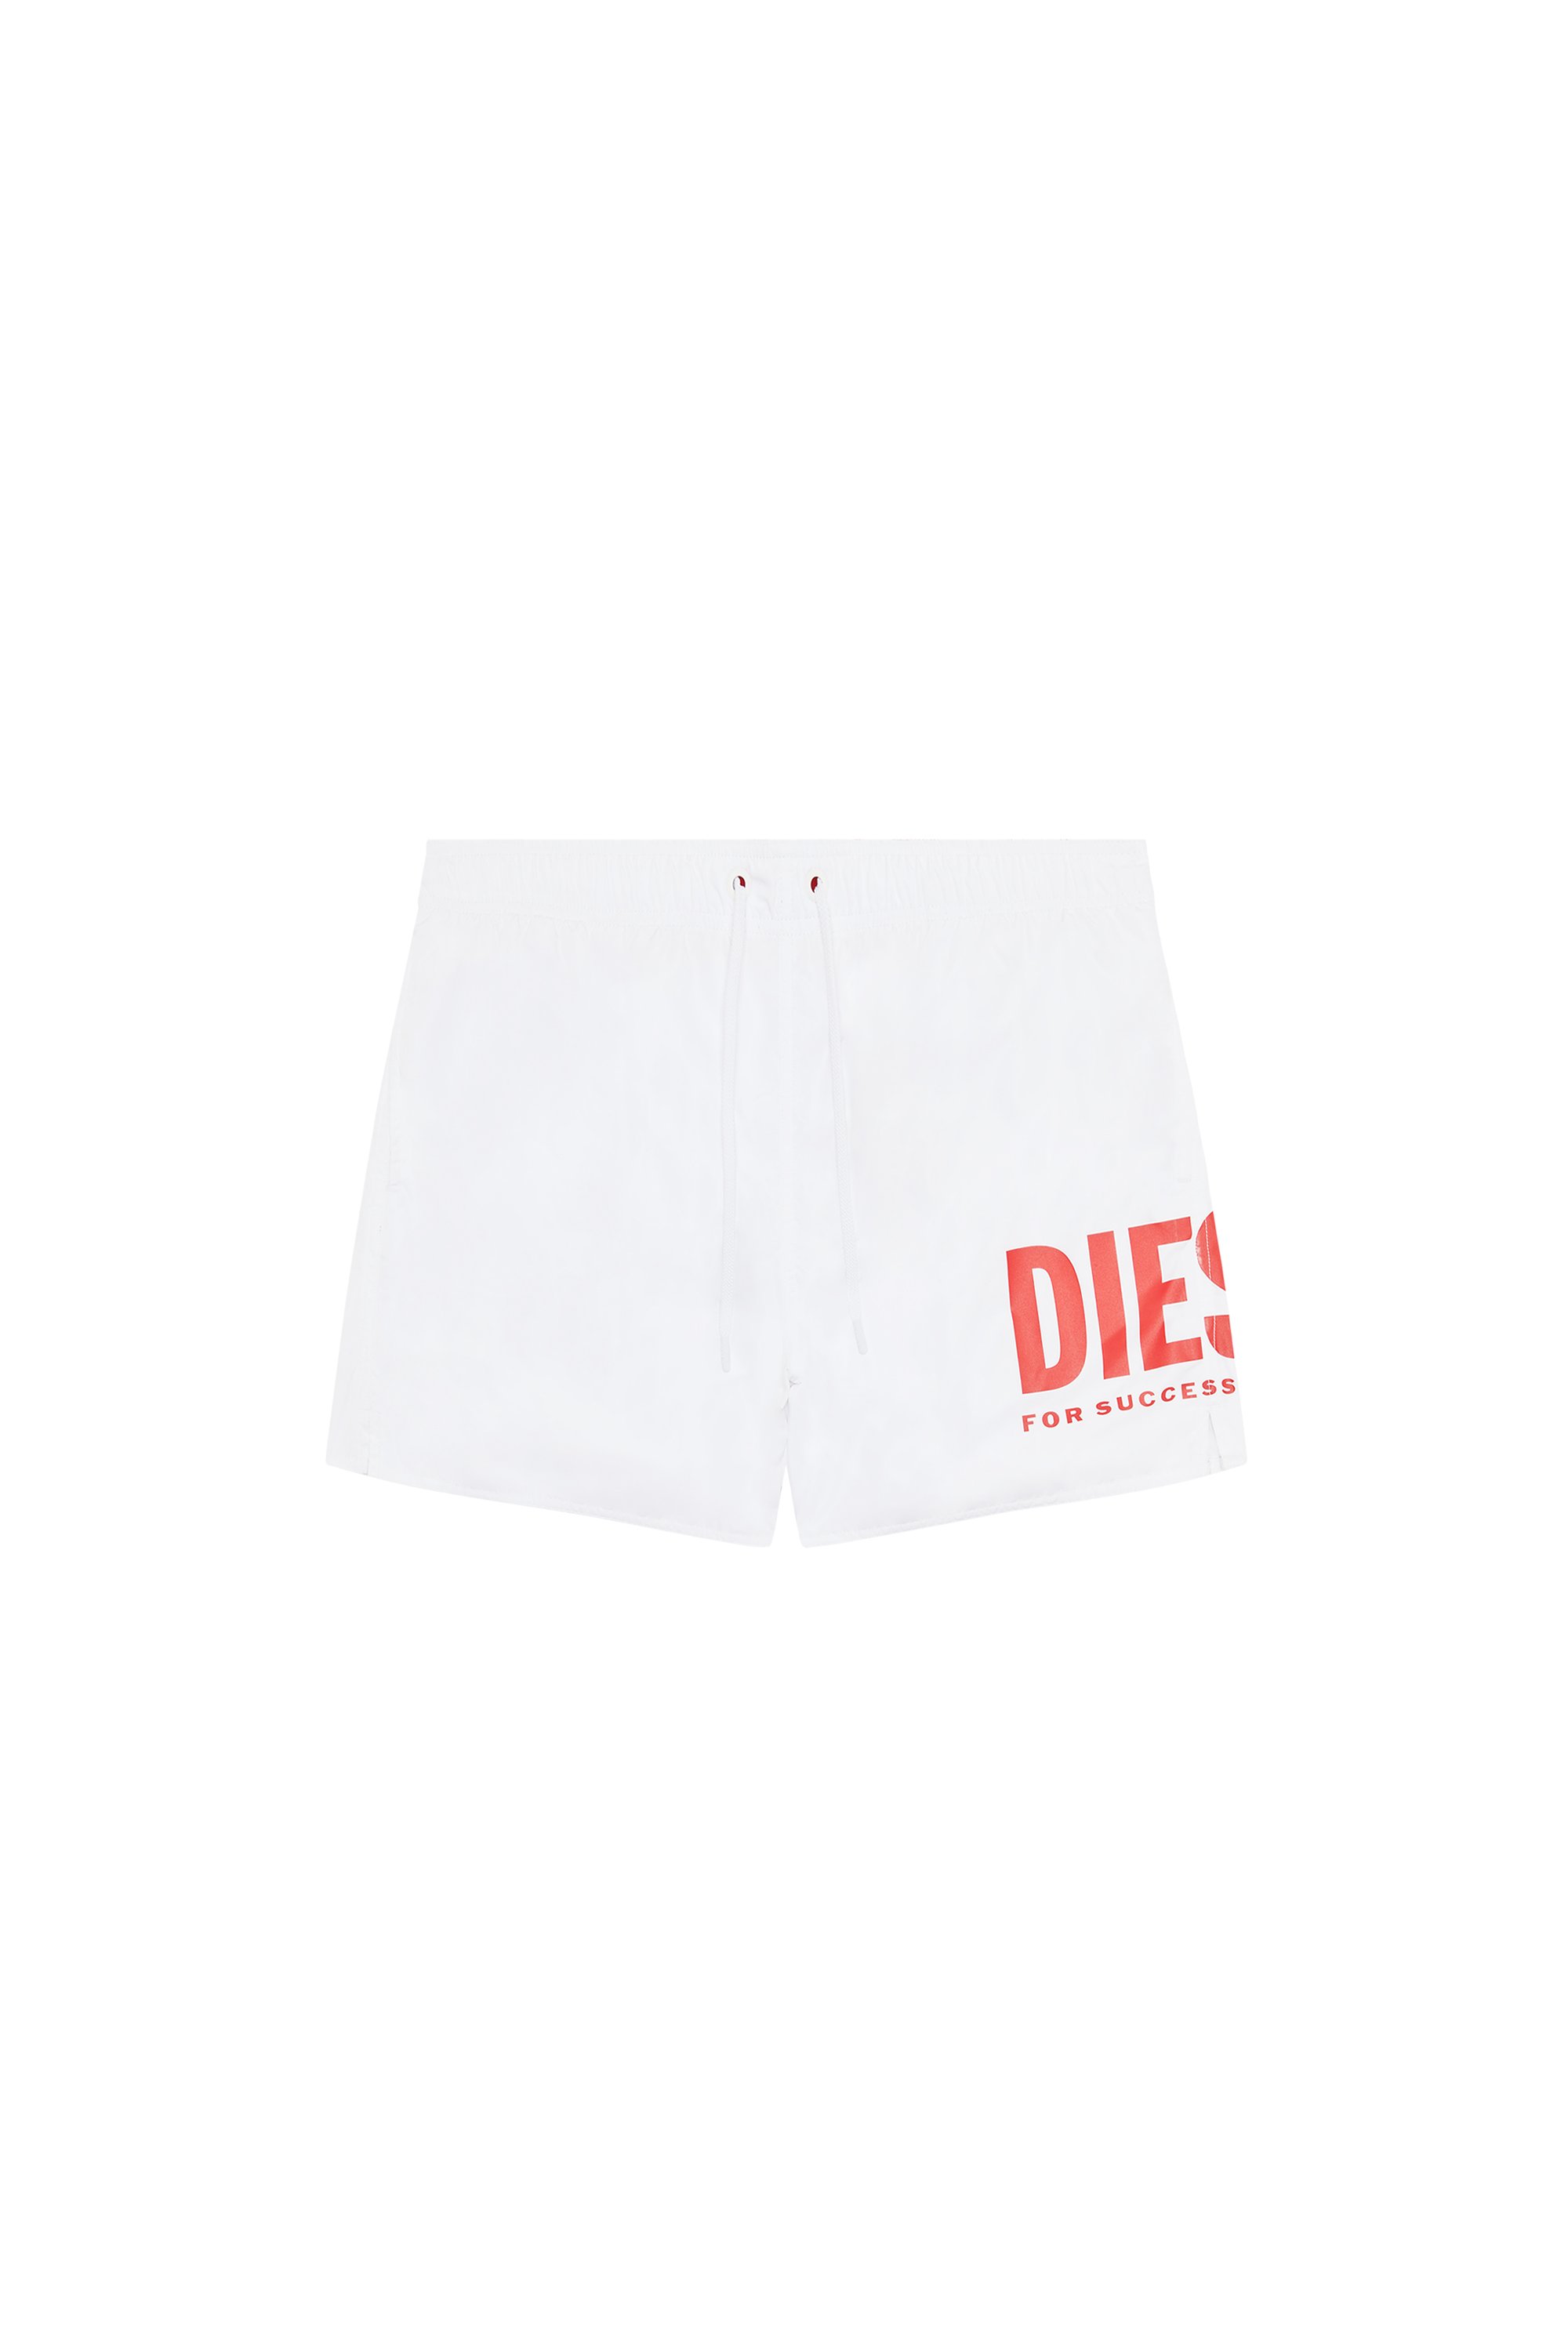 Diesel - Mittellange Bade-Shorts mit Maxi-Logo - Badeshorts - Herren - Weiss